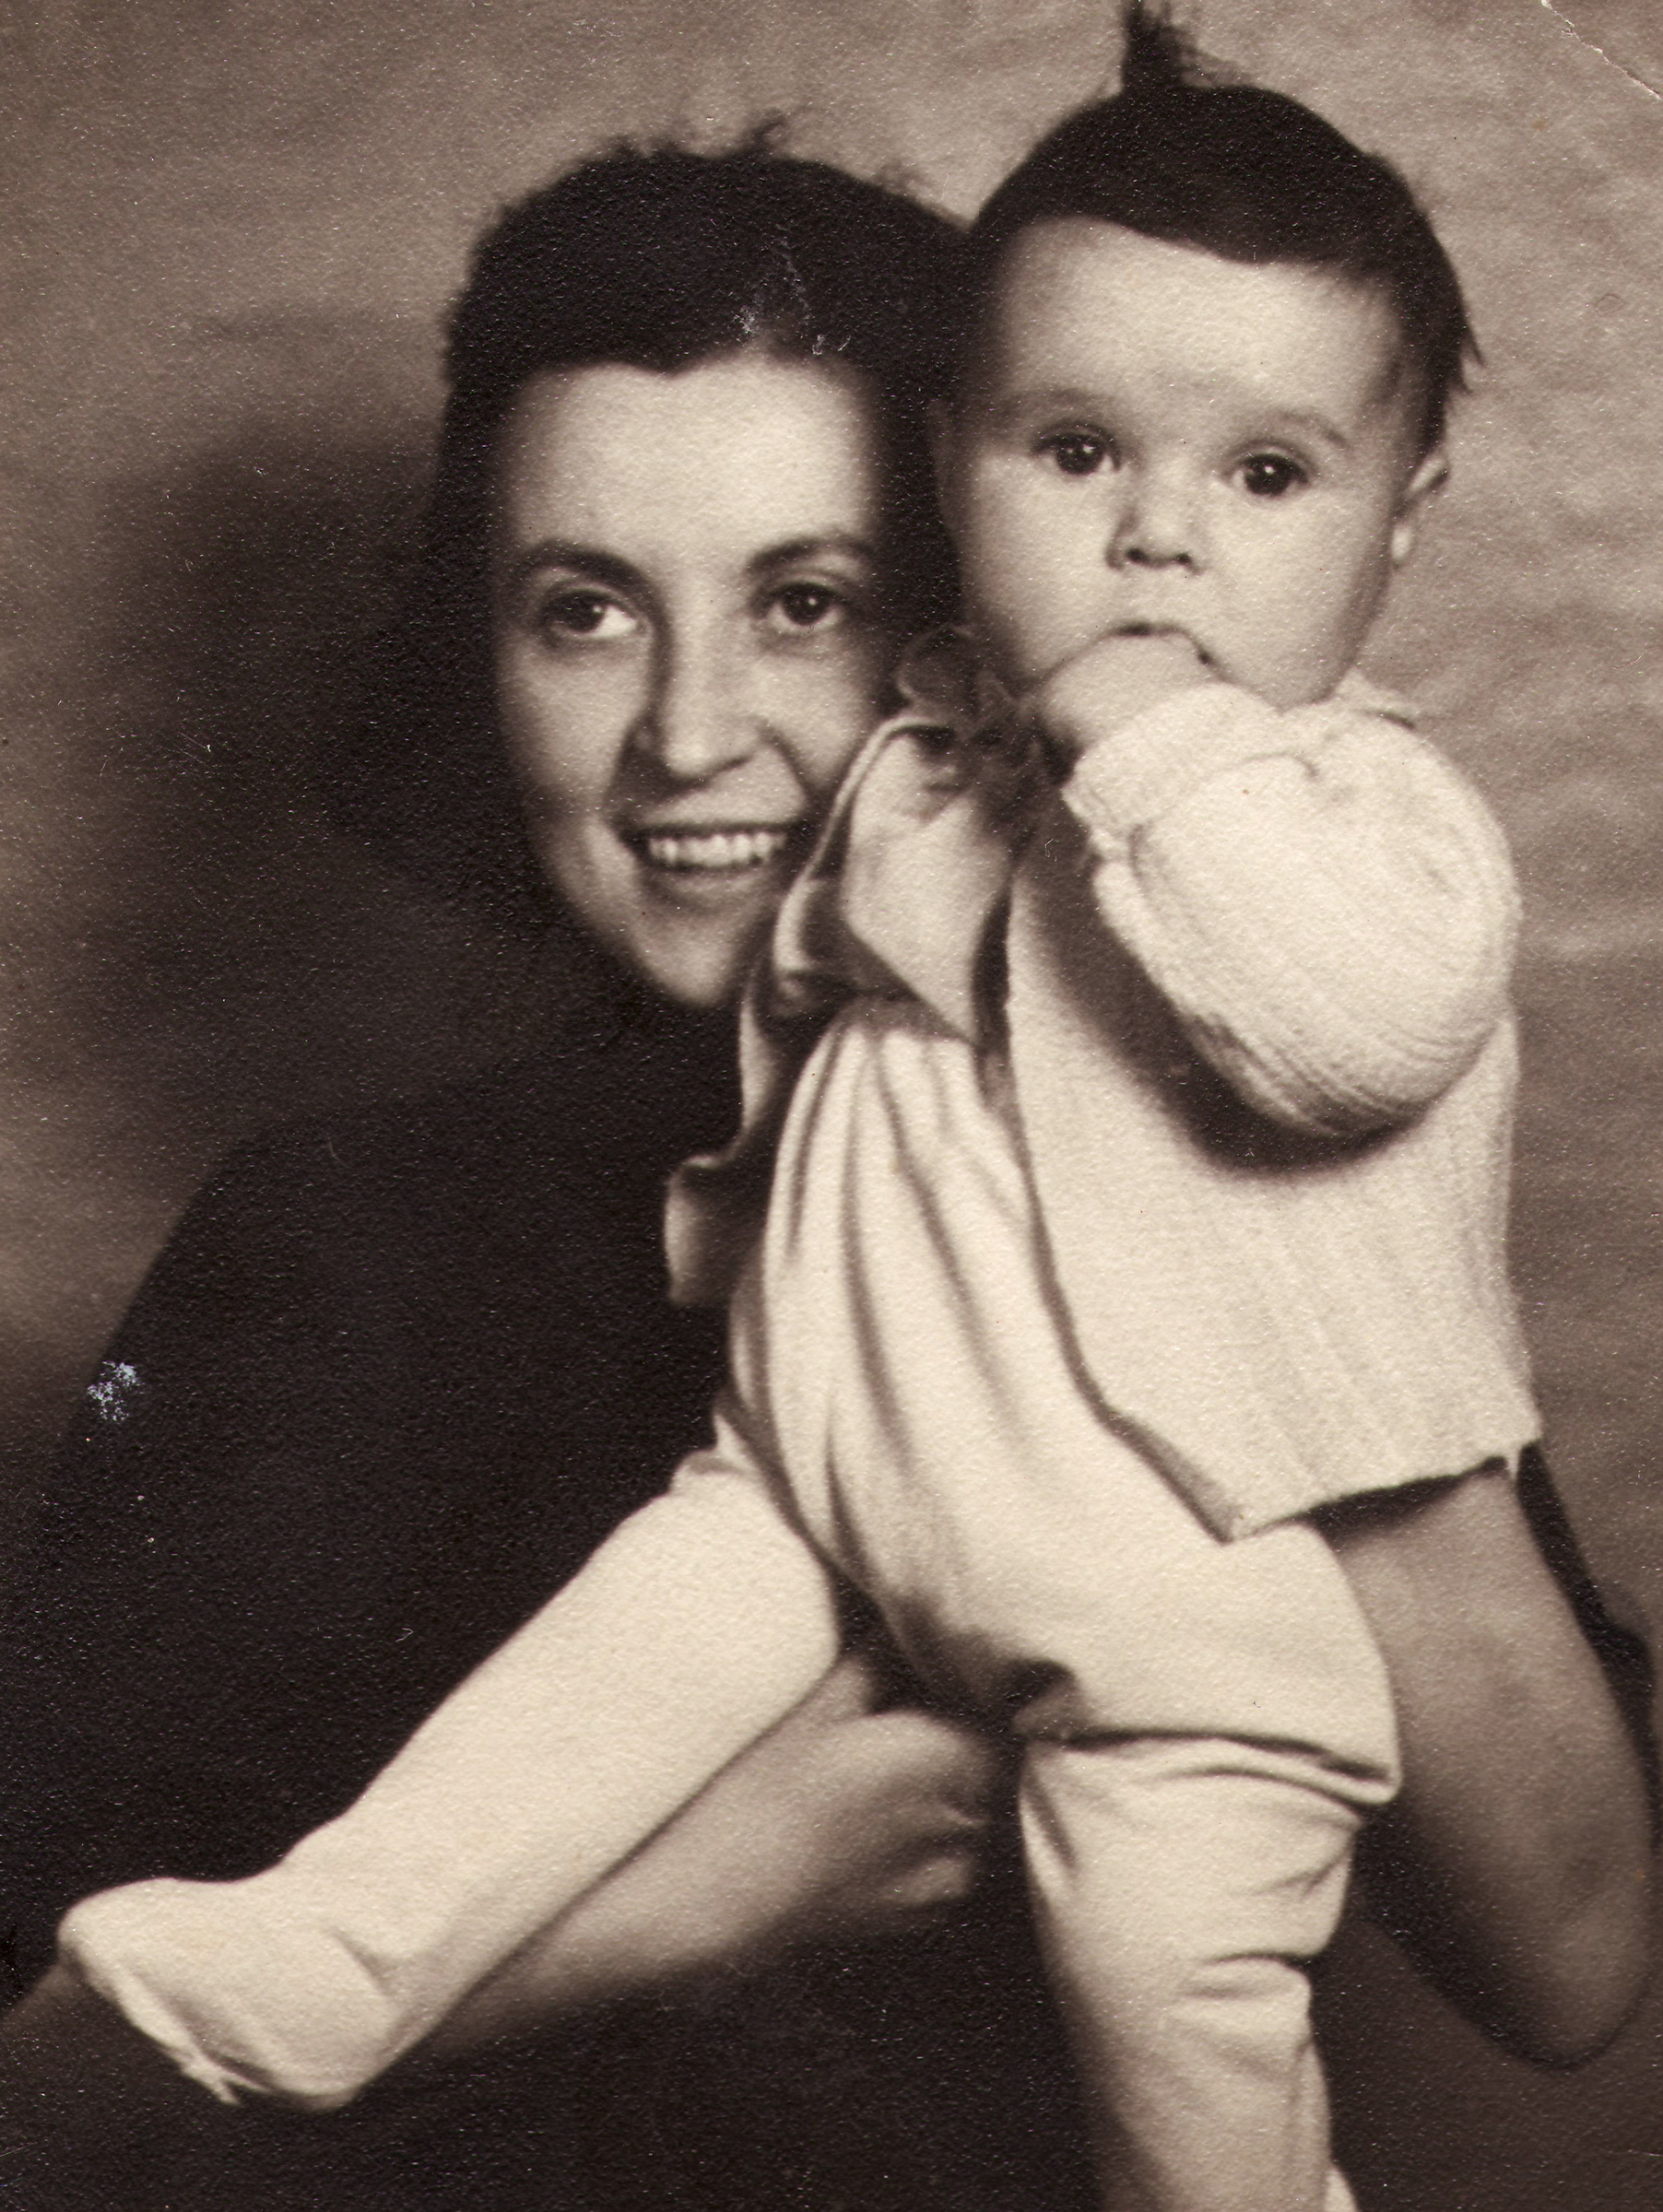 Pavla Kováčová with her daughter, 1940s